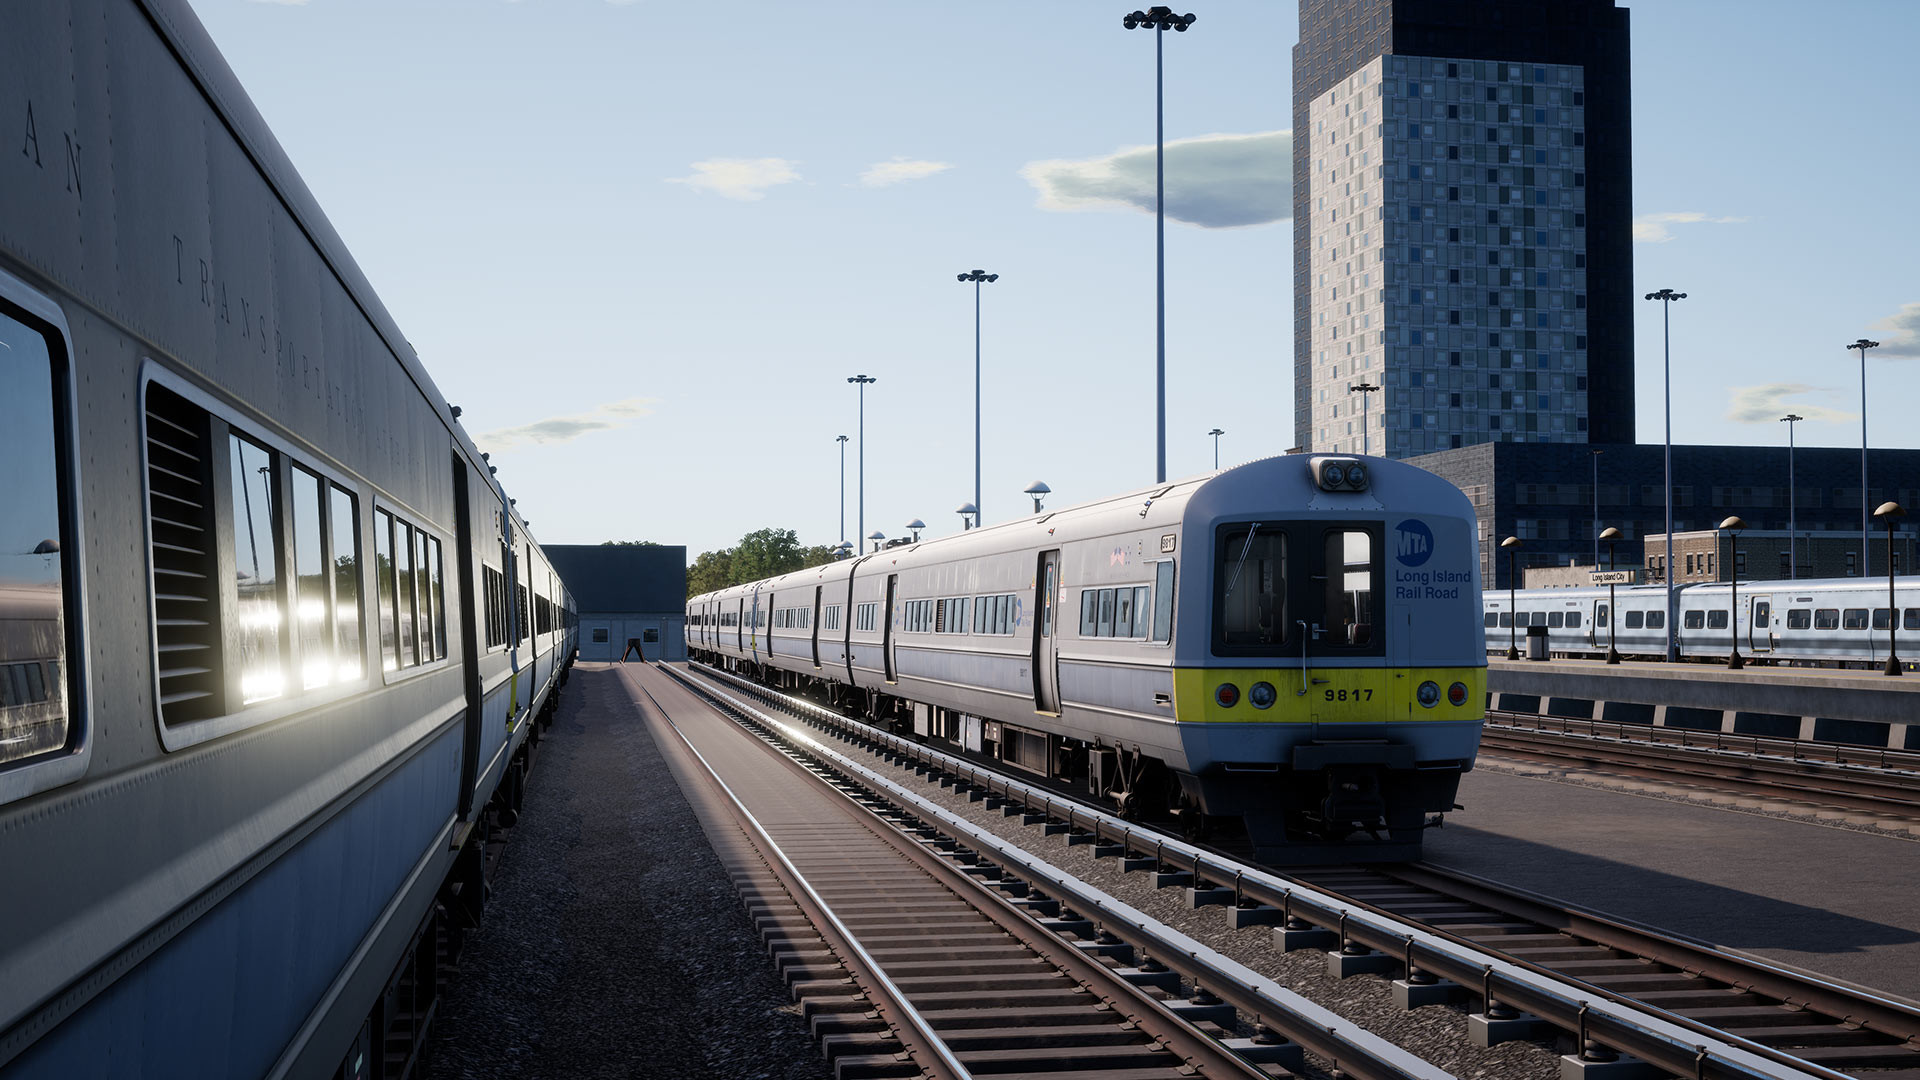 Train Sim World 2: LIRR M3 EMU Loco Add-On DLC Steam CD Key